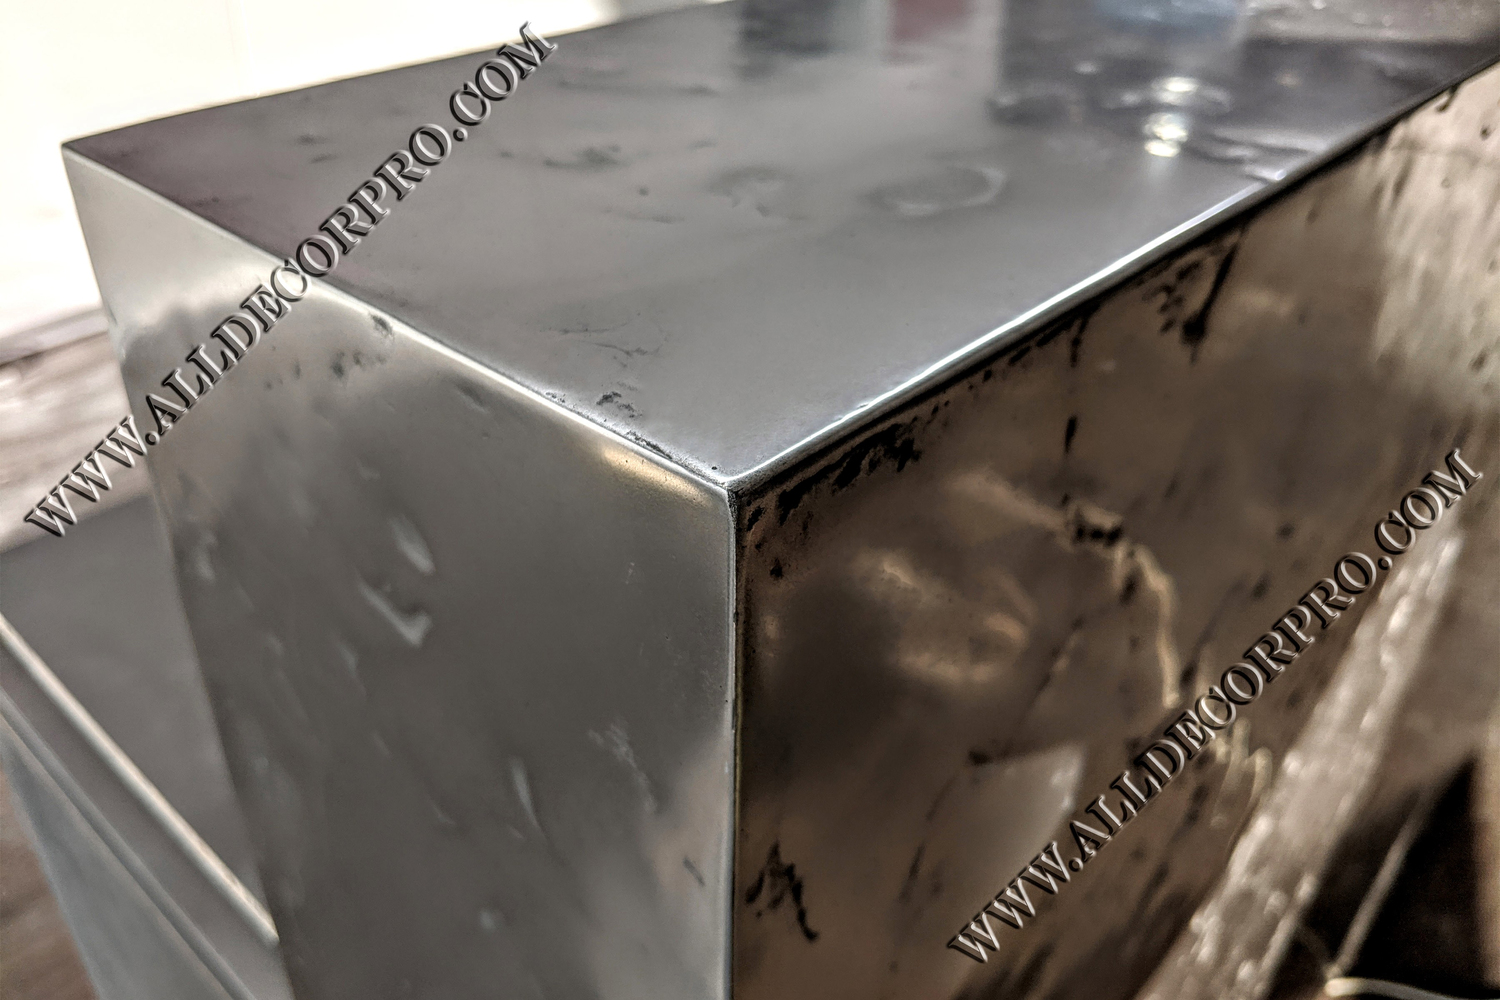 Стойка ресепшен металлизированная жидким металлом Metallhaut с эффектом полированного мятого металла